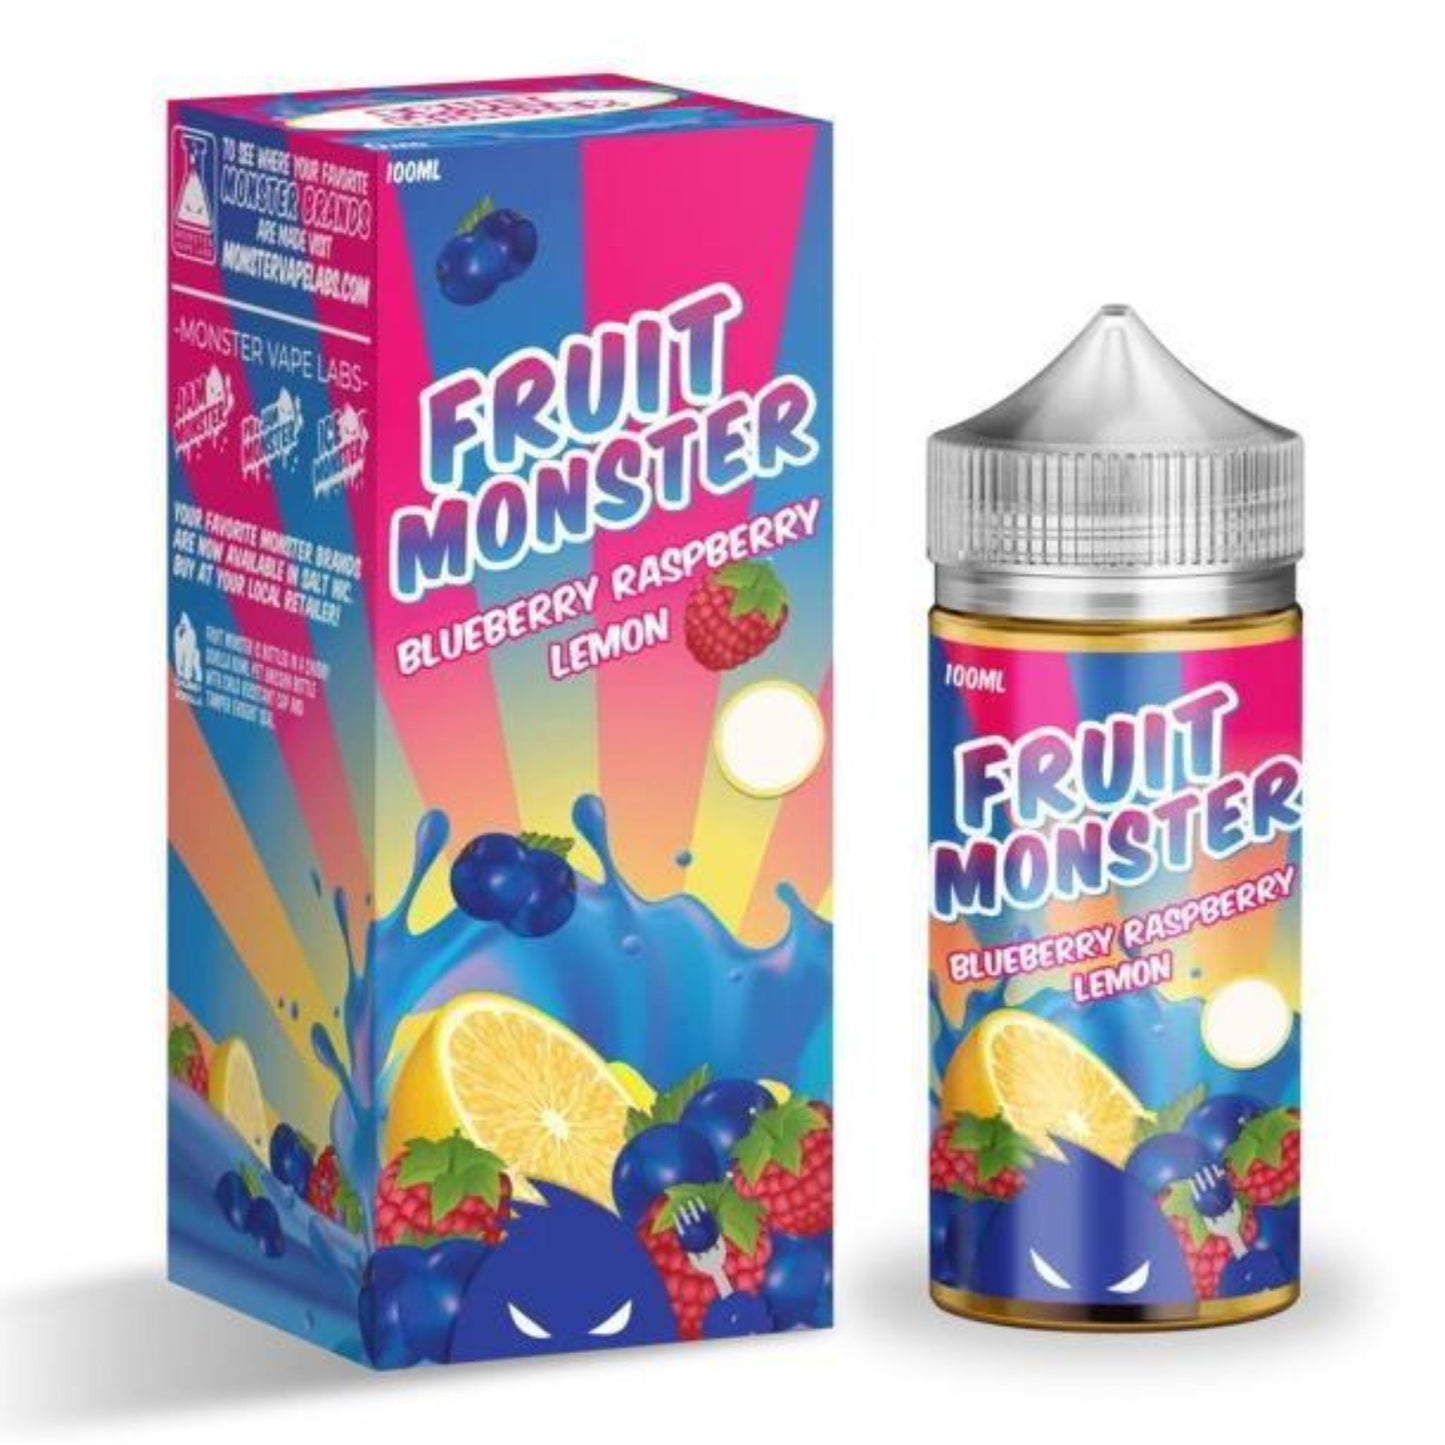 Fruit Monster | Blueberry Raspberry Lemon 100ml bottle and box